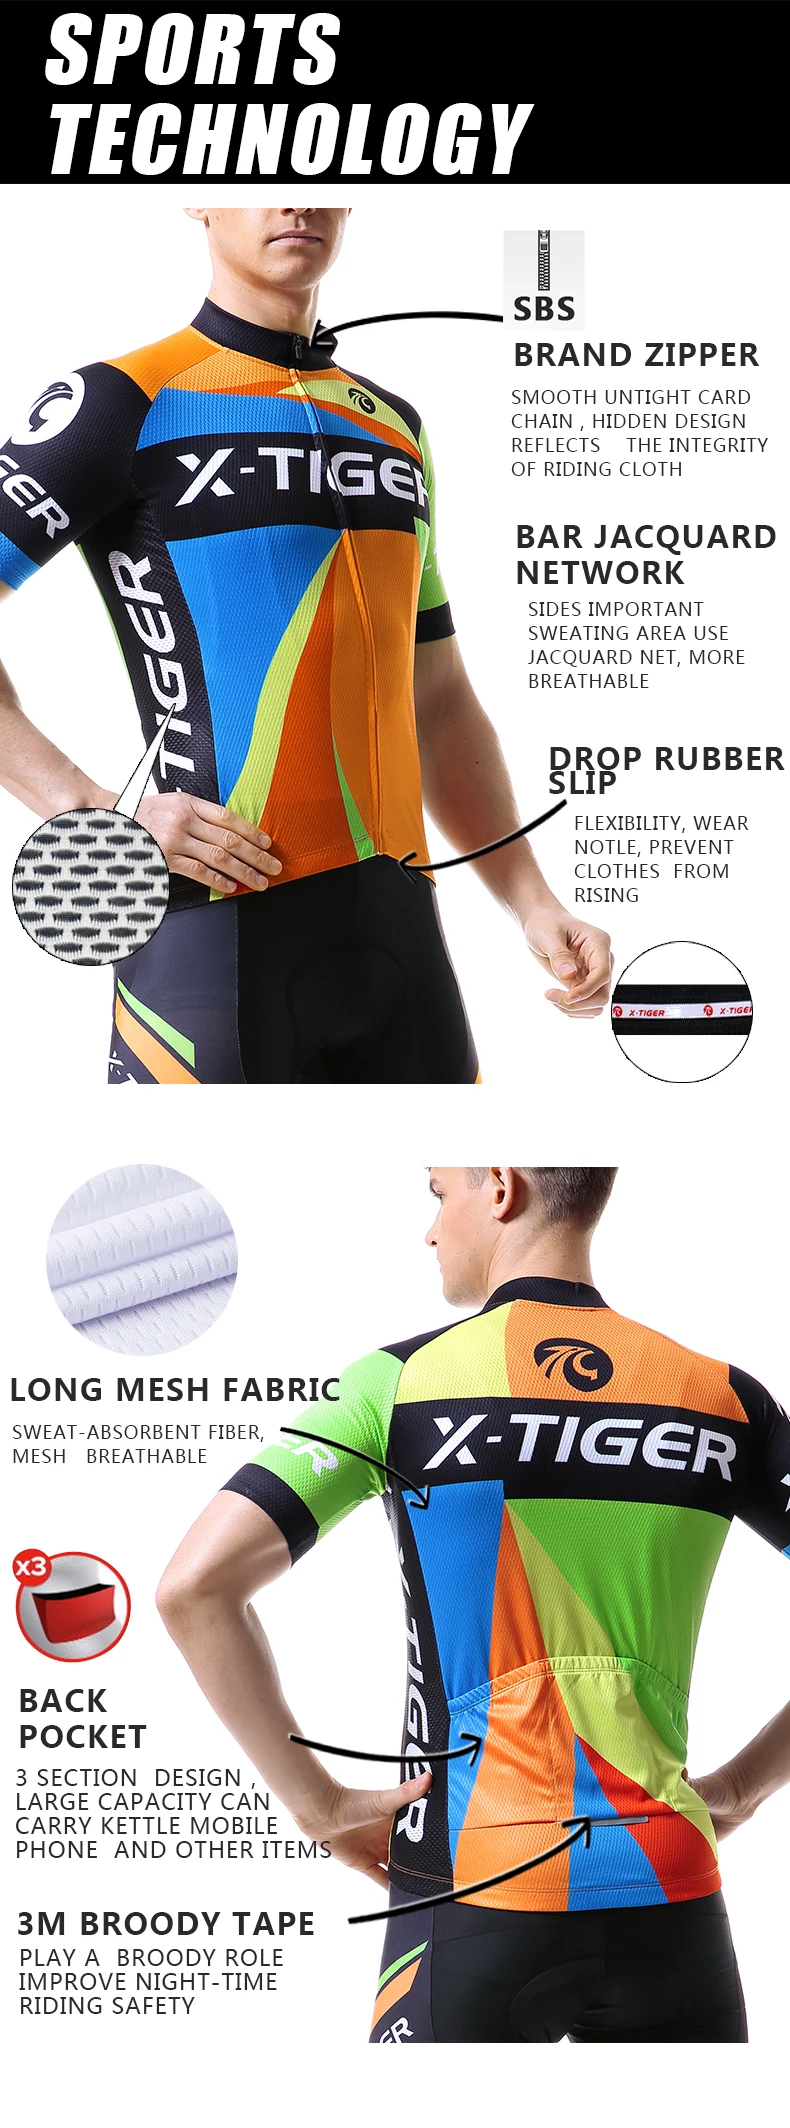 X-TIGER Pro одежда для велоспорта Лето полиэстер Одежда для велоспорта Спортивная одежда для горного велосипеда одежда для велоспорта Джерси для велоспорта